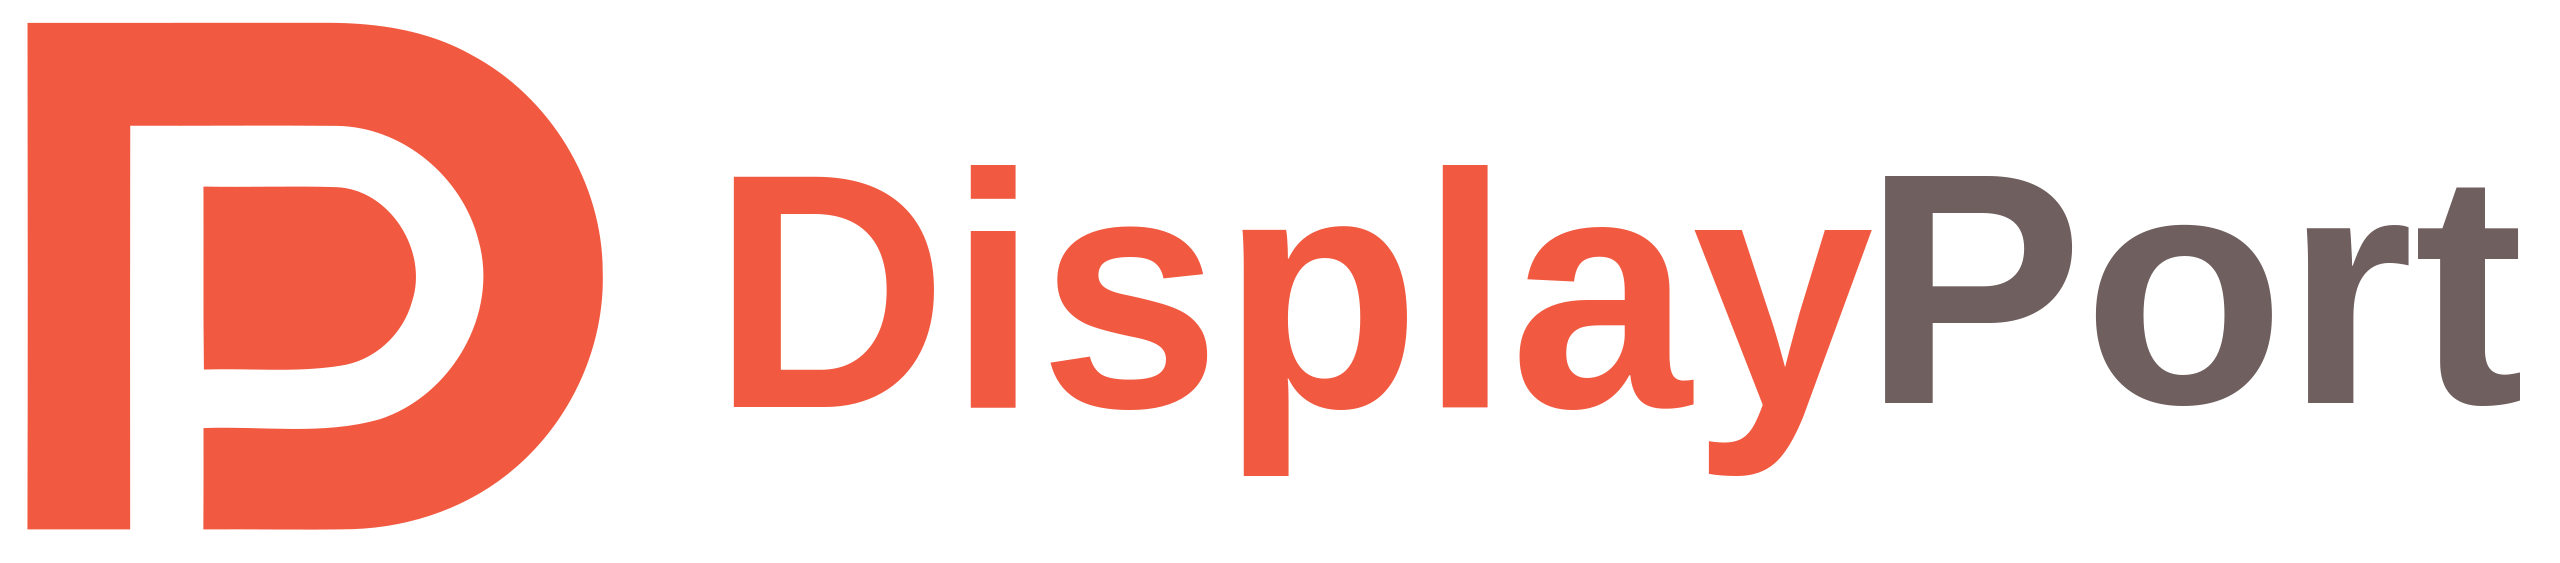 DisplayPort - Wikipedia